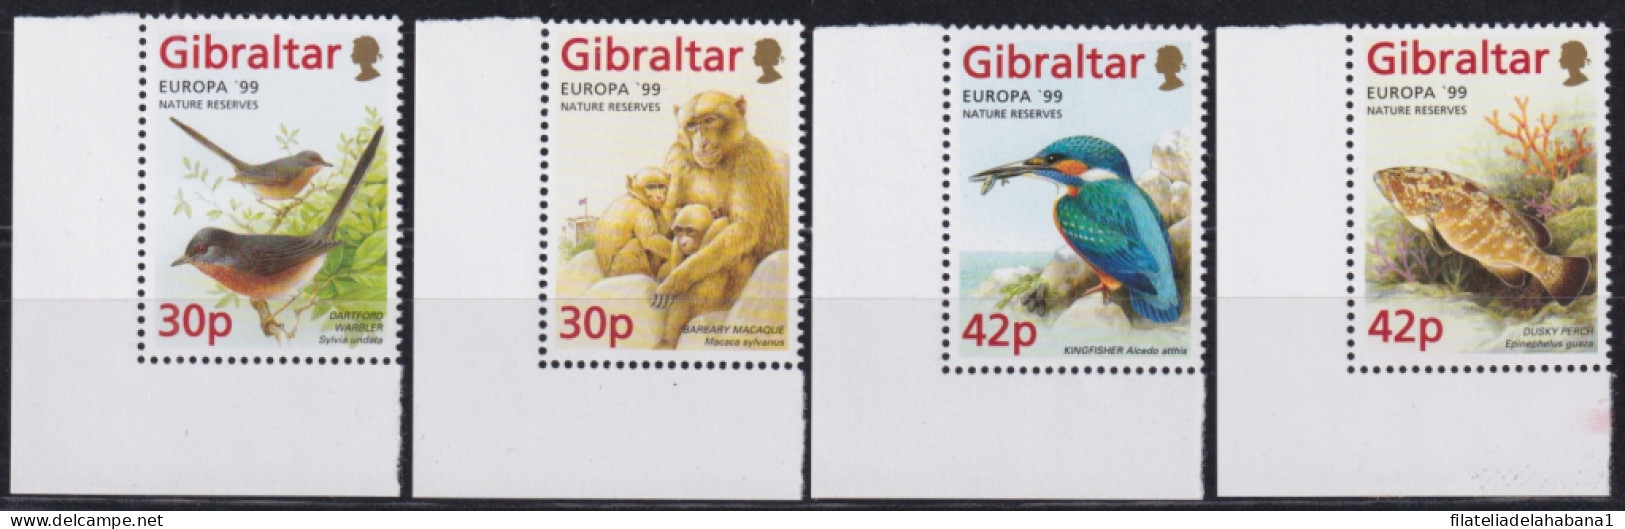 F-EX50154 GIBRALTAR MNH 1999 EUROPE CEPT WILDLIFE BIRD AVES FISH MONKEY & GARDEN.  - Neufs